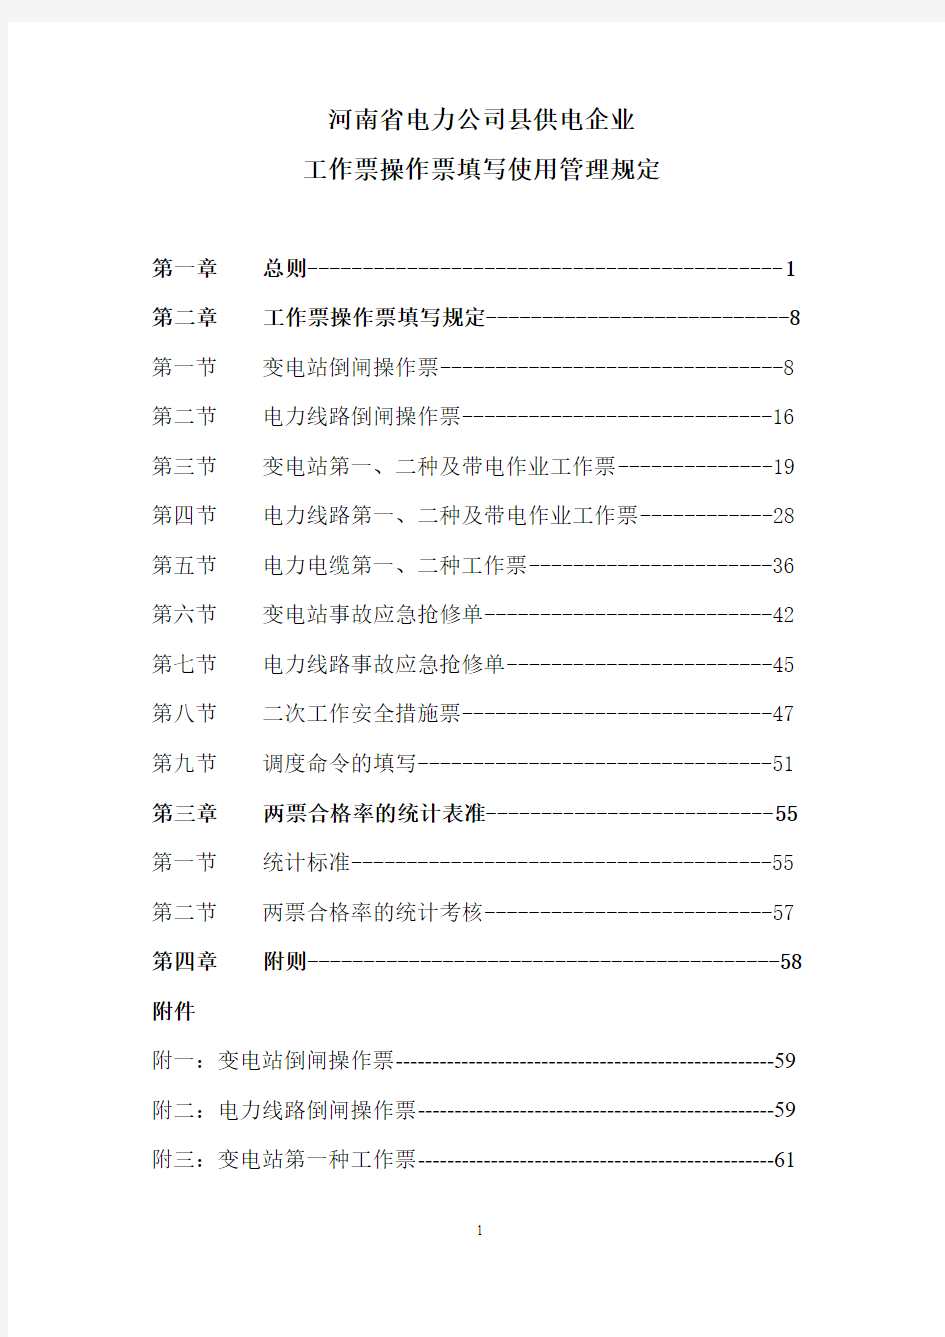 河南省电力公司县供电企业工作票操作票填写使用管理规定